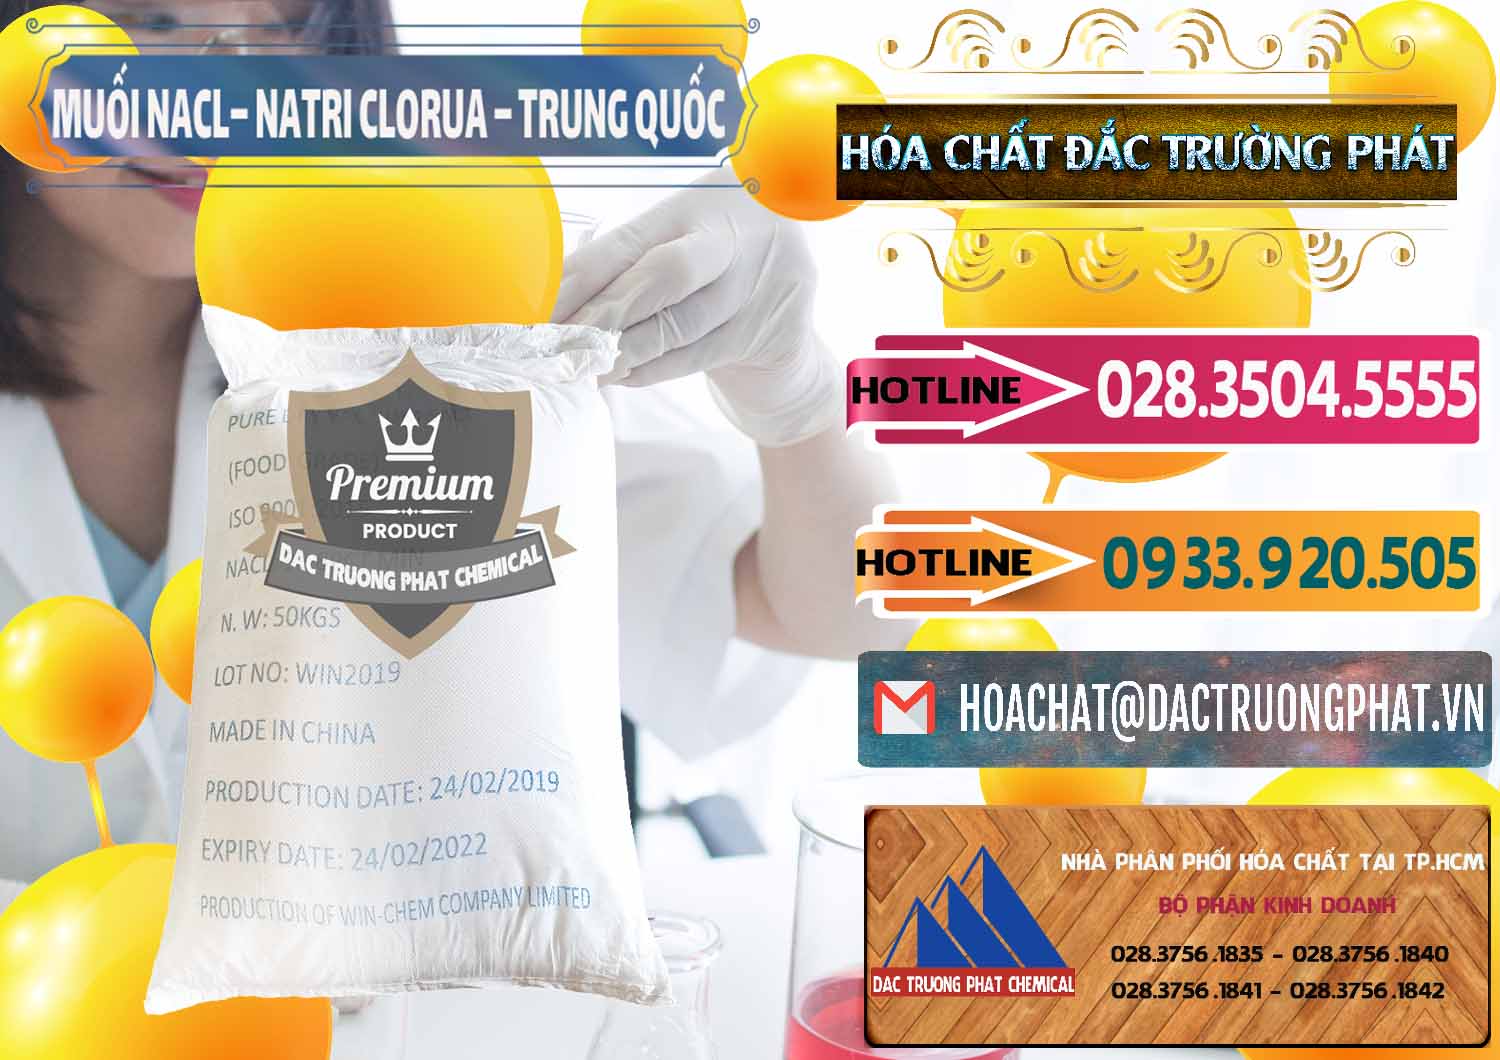 Nơi bán - phân phối Muối NaCL – Sodium Chloride Trung Quốc China - 0097 - Cung cấp & phân phối hóa chất tại TP.HCM - dactruongphat.vn